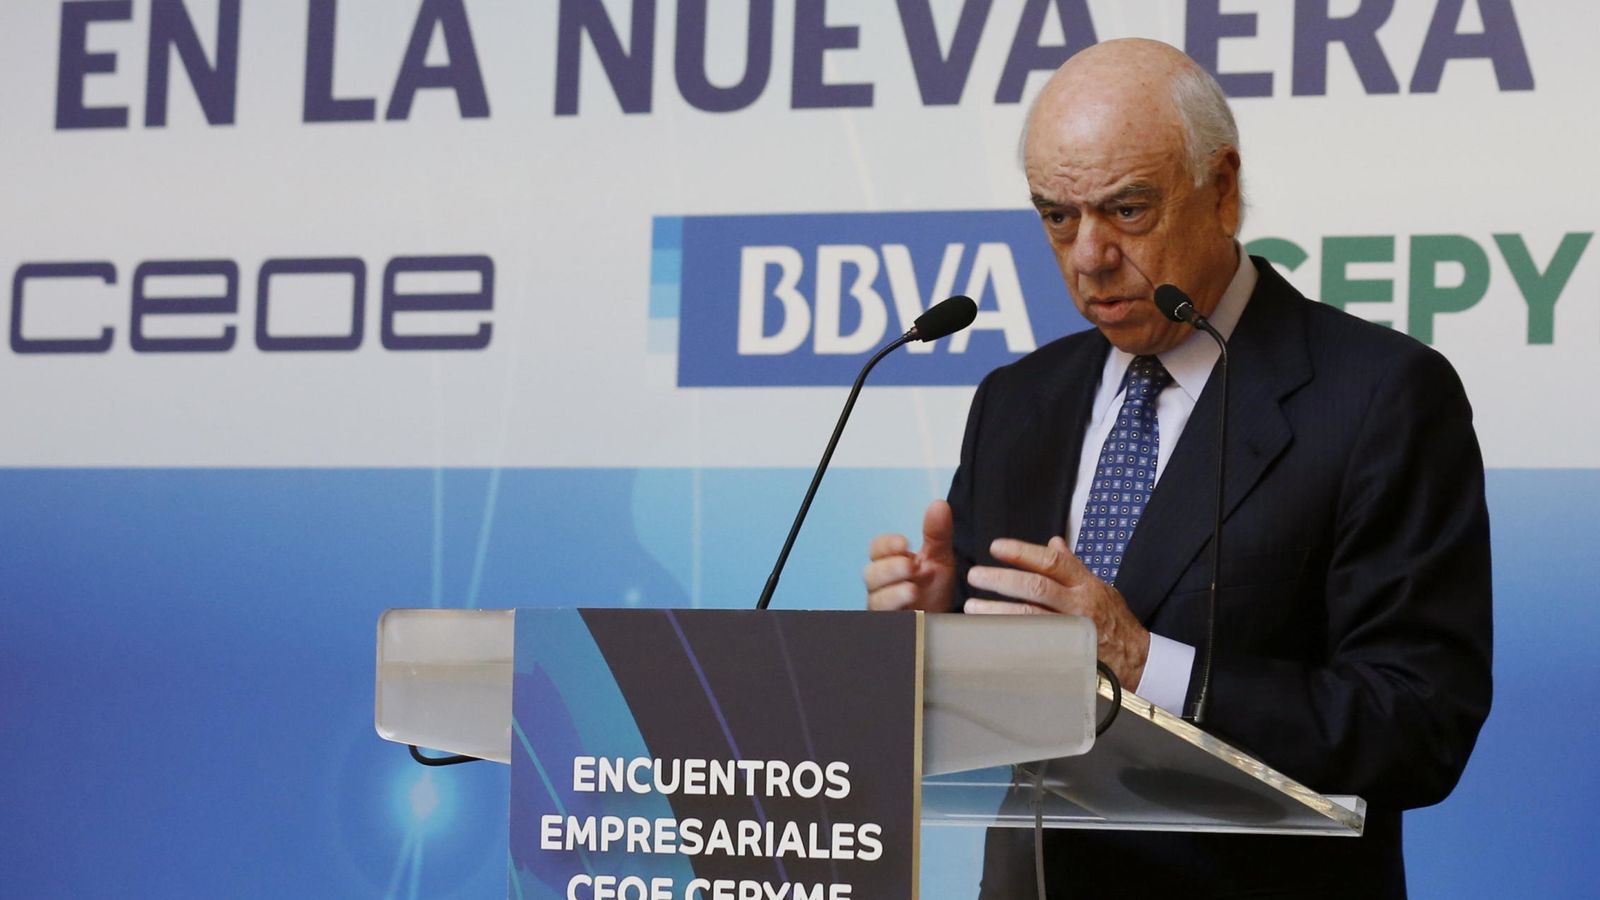 Foto: El presidente de BBVA, Francisco González, en un encuentro empresarial el 17 de noviembre. (EFE)